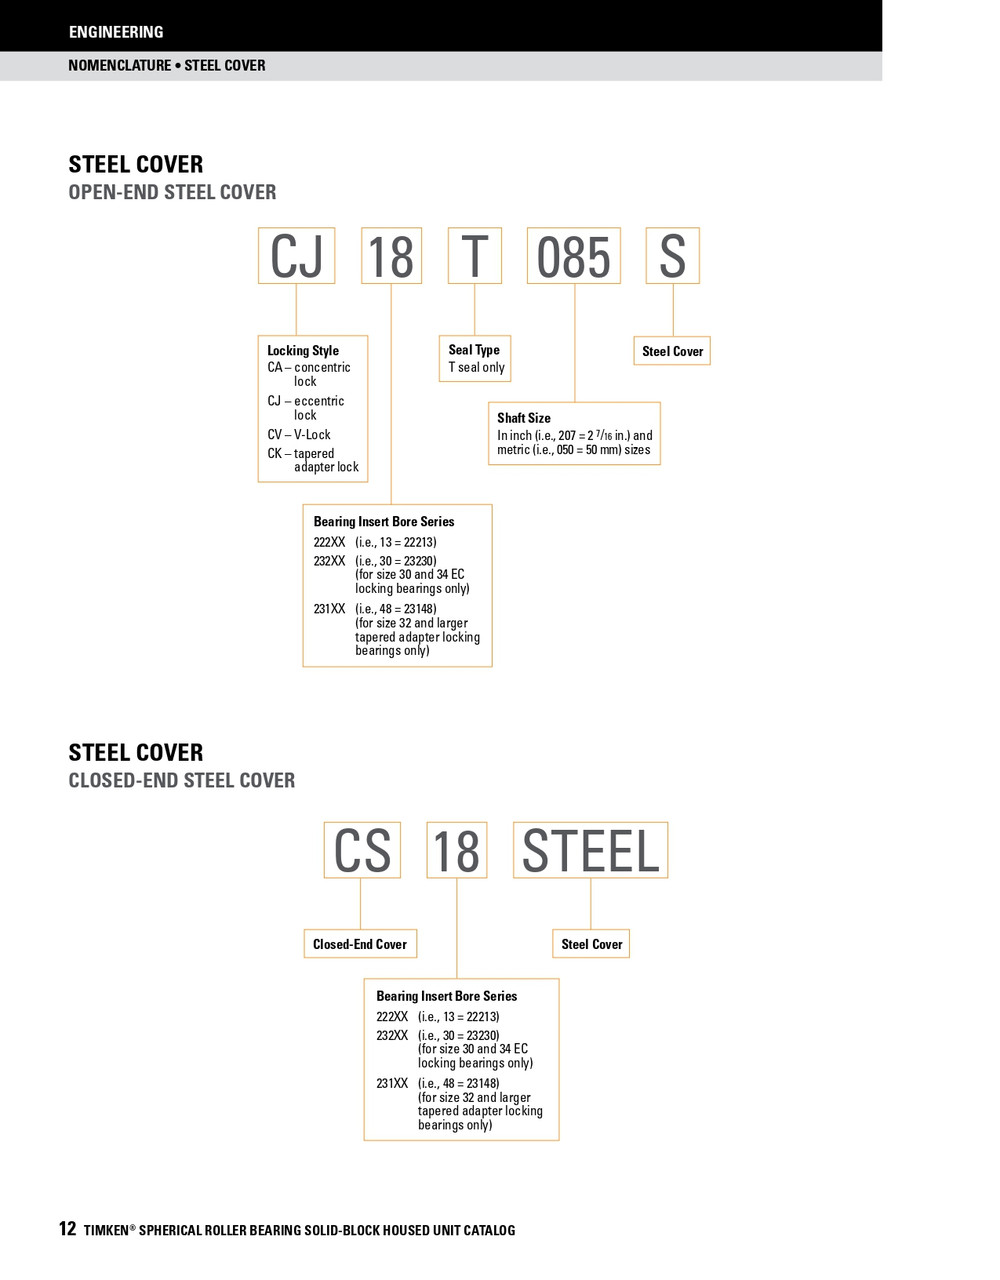 1-11/16" Timken SRB Steel Open End Cover w/Teflon Seal - TA/DV Taper Lock Bushing Type  CK10T111S